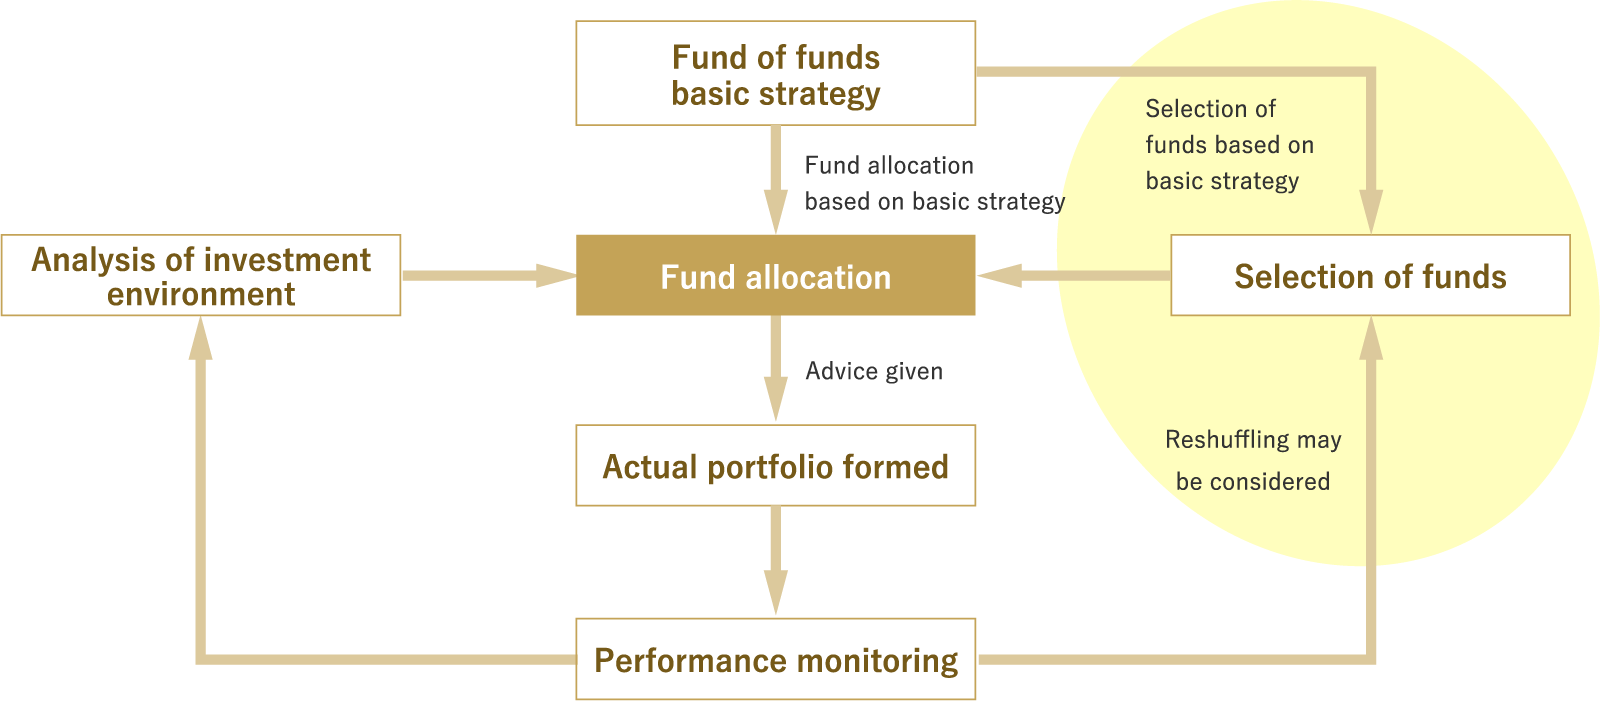 Fund allocation process